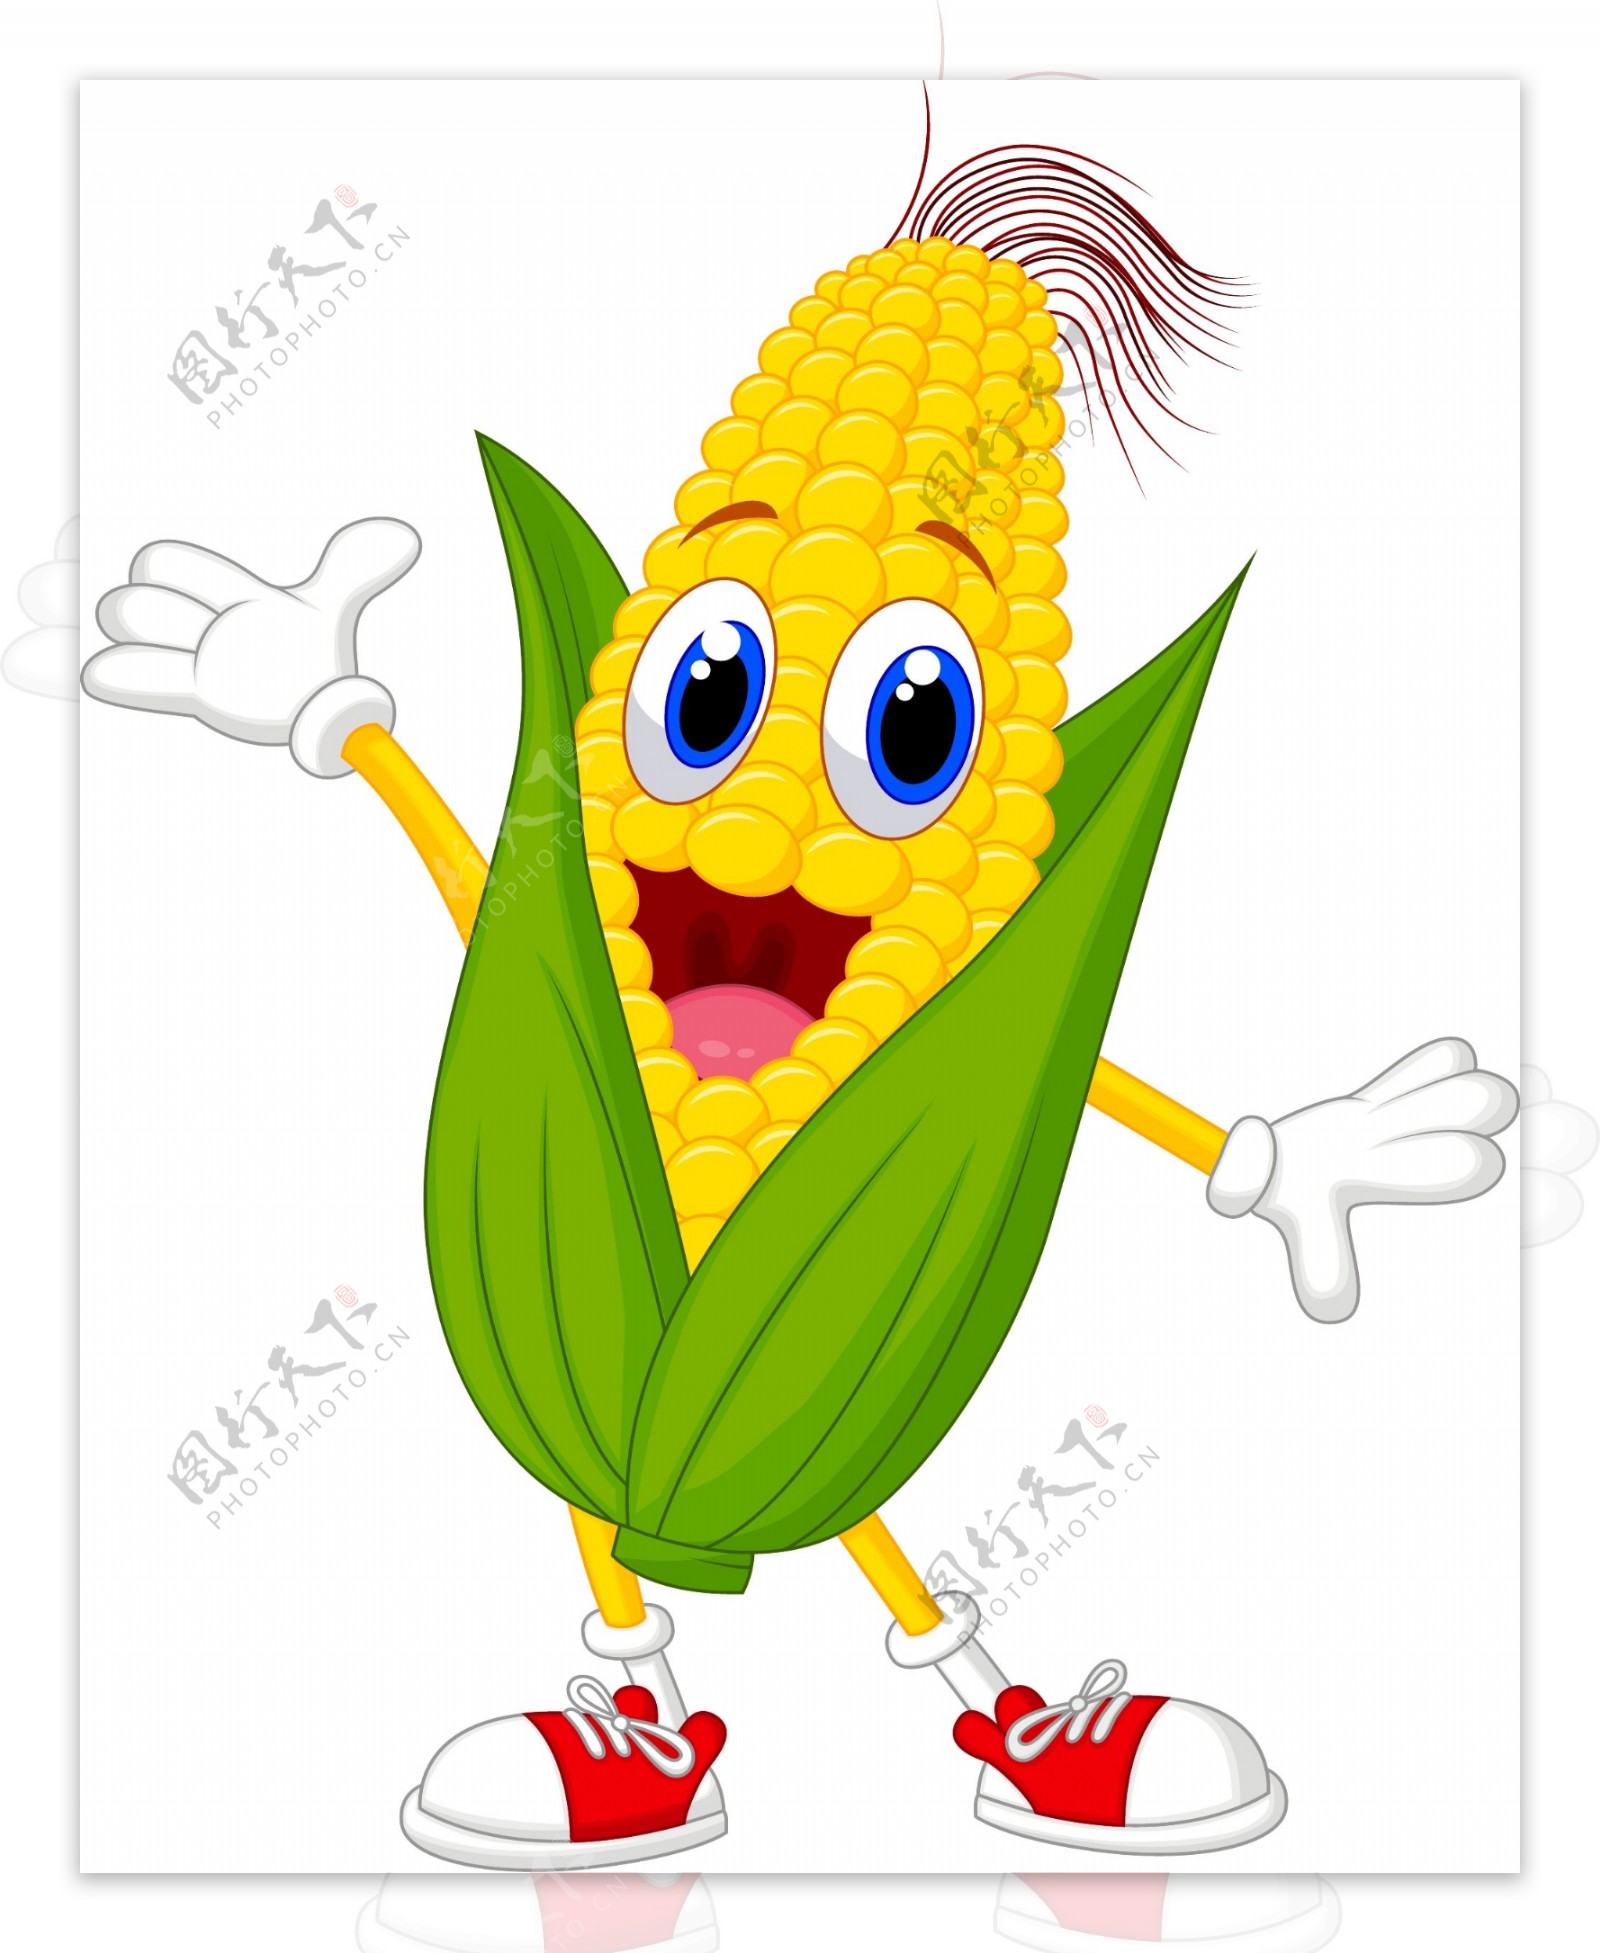 卡通玉米人矢量素材图片